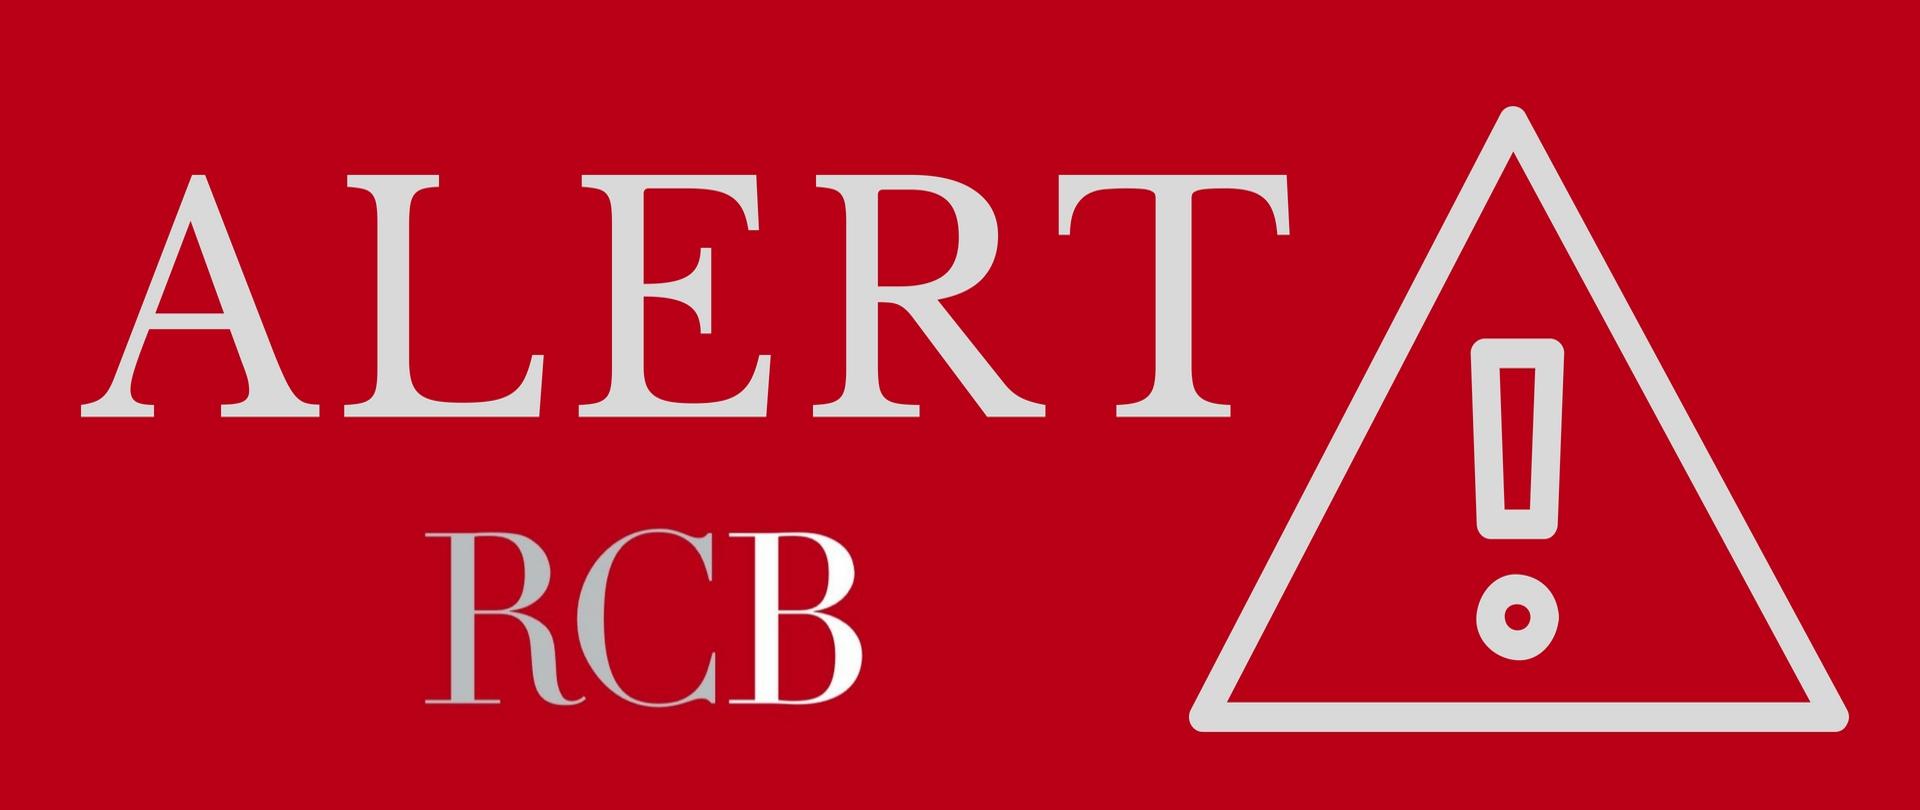 Logo przedstawia czerwony prostokąt z białymi drukowanymi literami Alert RCB oraz umieszczony biały równoramienny trójkąt, na nim również biały wykrzyknik. 